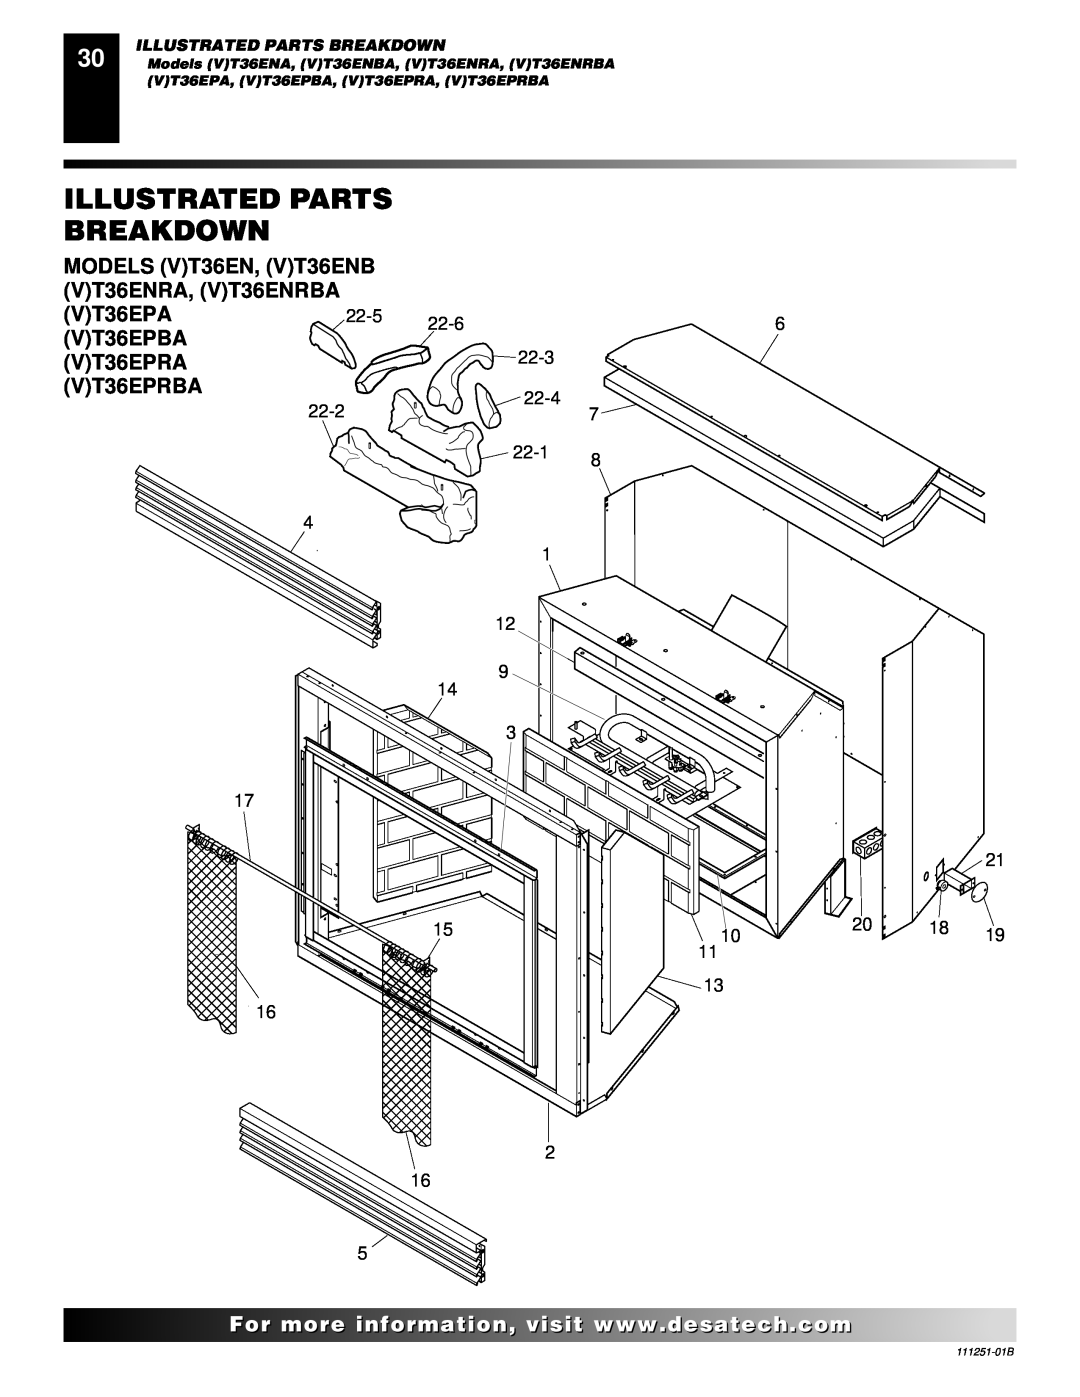 Desa (V)T36ENA installation manual Illustrated Parts Breakdown, MODELS VT36EN, VT36ENB VT36ENRA, VT36ENRBA 